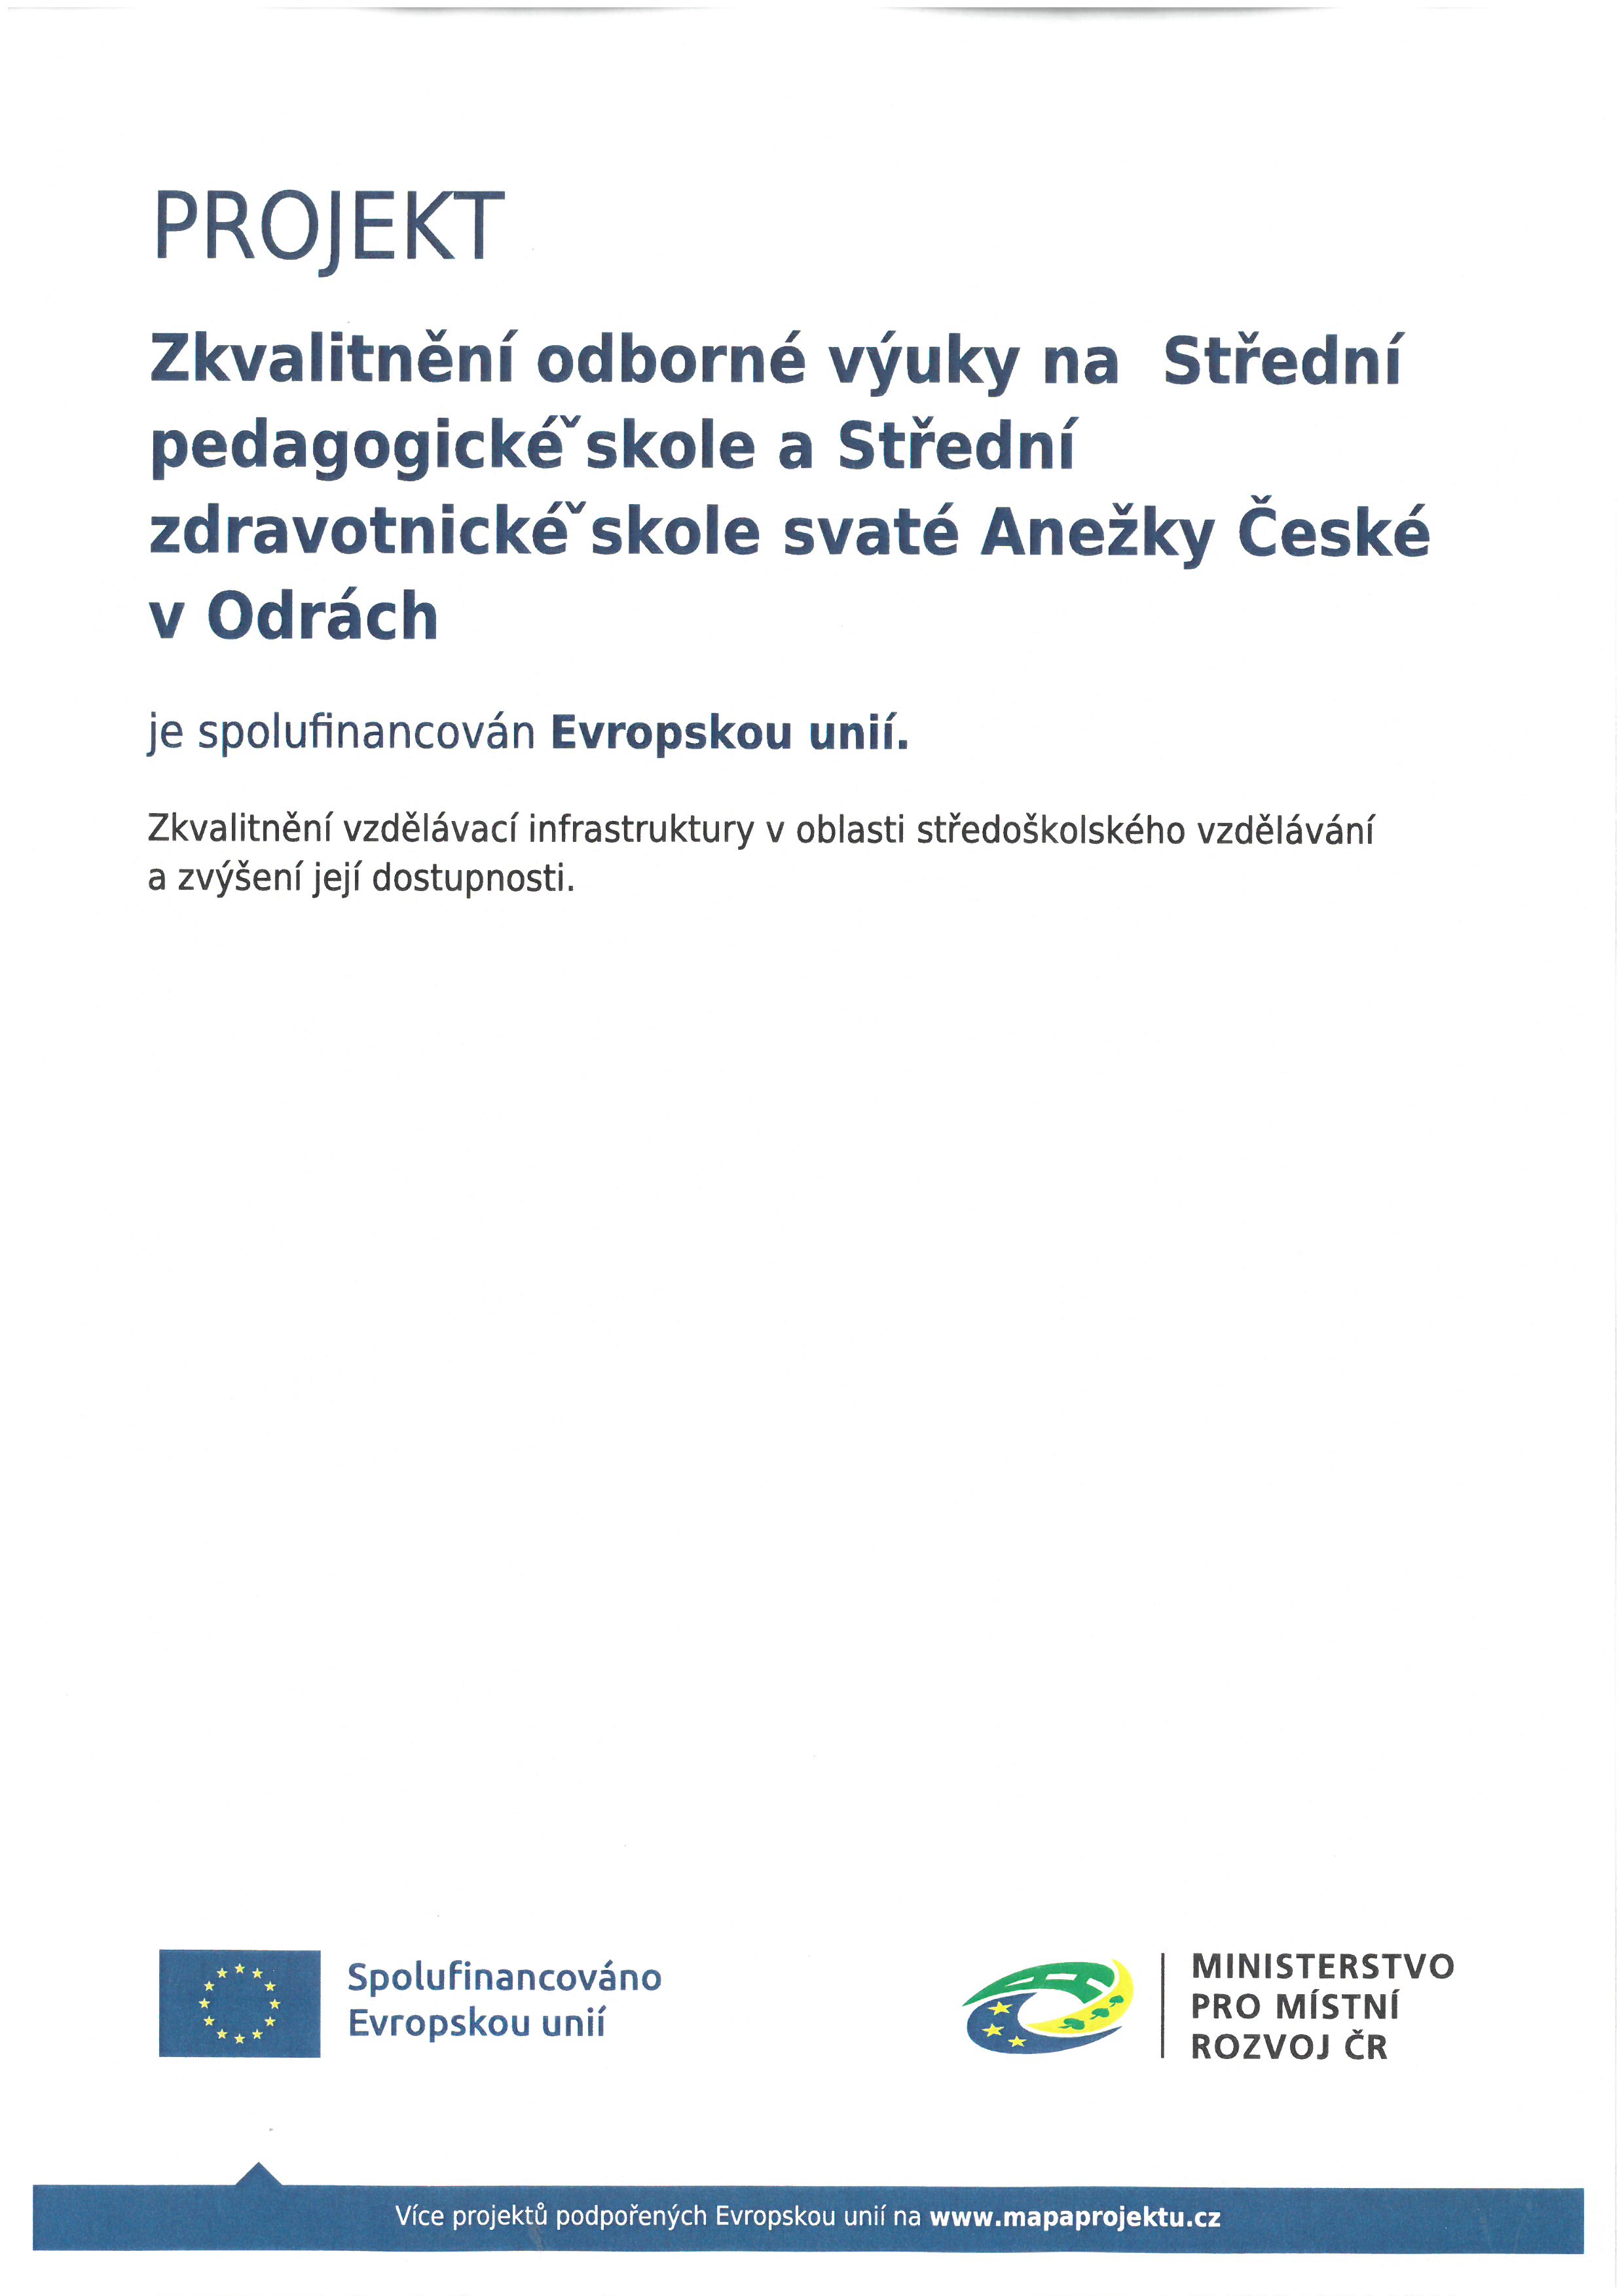 Zkvaliněné odborné výuky na SpdgŠ a SZŠ sv.A.Č, 2024